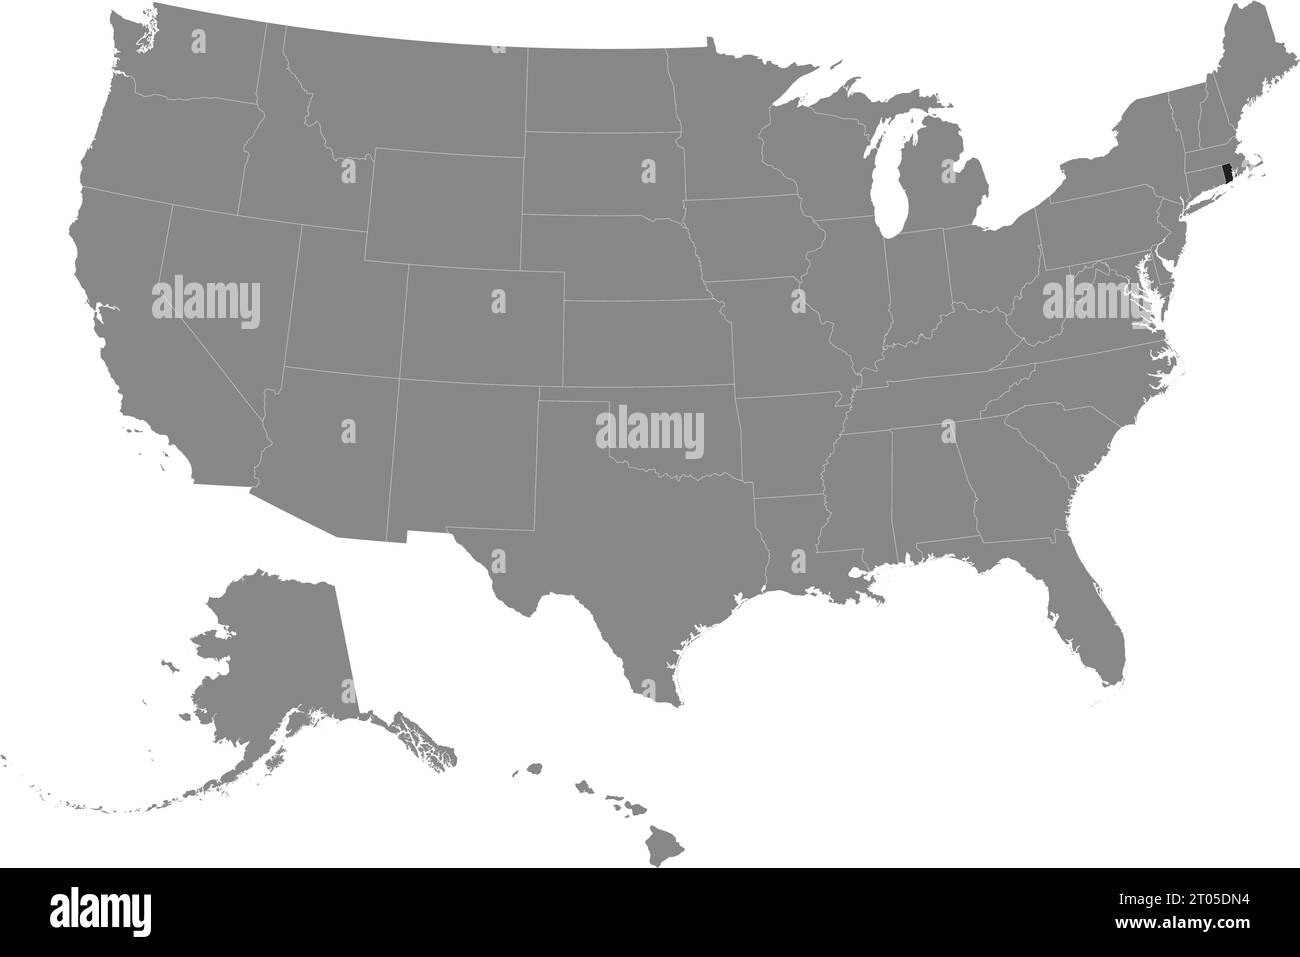 Carte fédérale CMJN noire du RHODE ISLAND à l'intérieur de la carte politique blanche et grise détaillée des États-Unis d'Amérique sur fond transparent Illustration de Vecteur